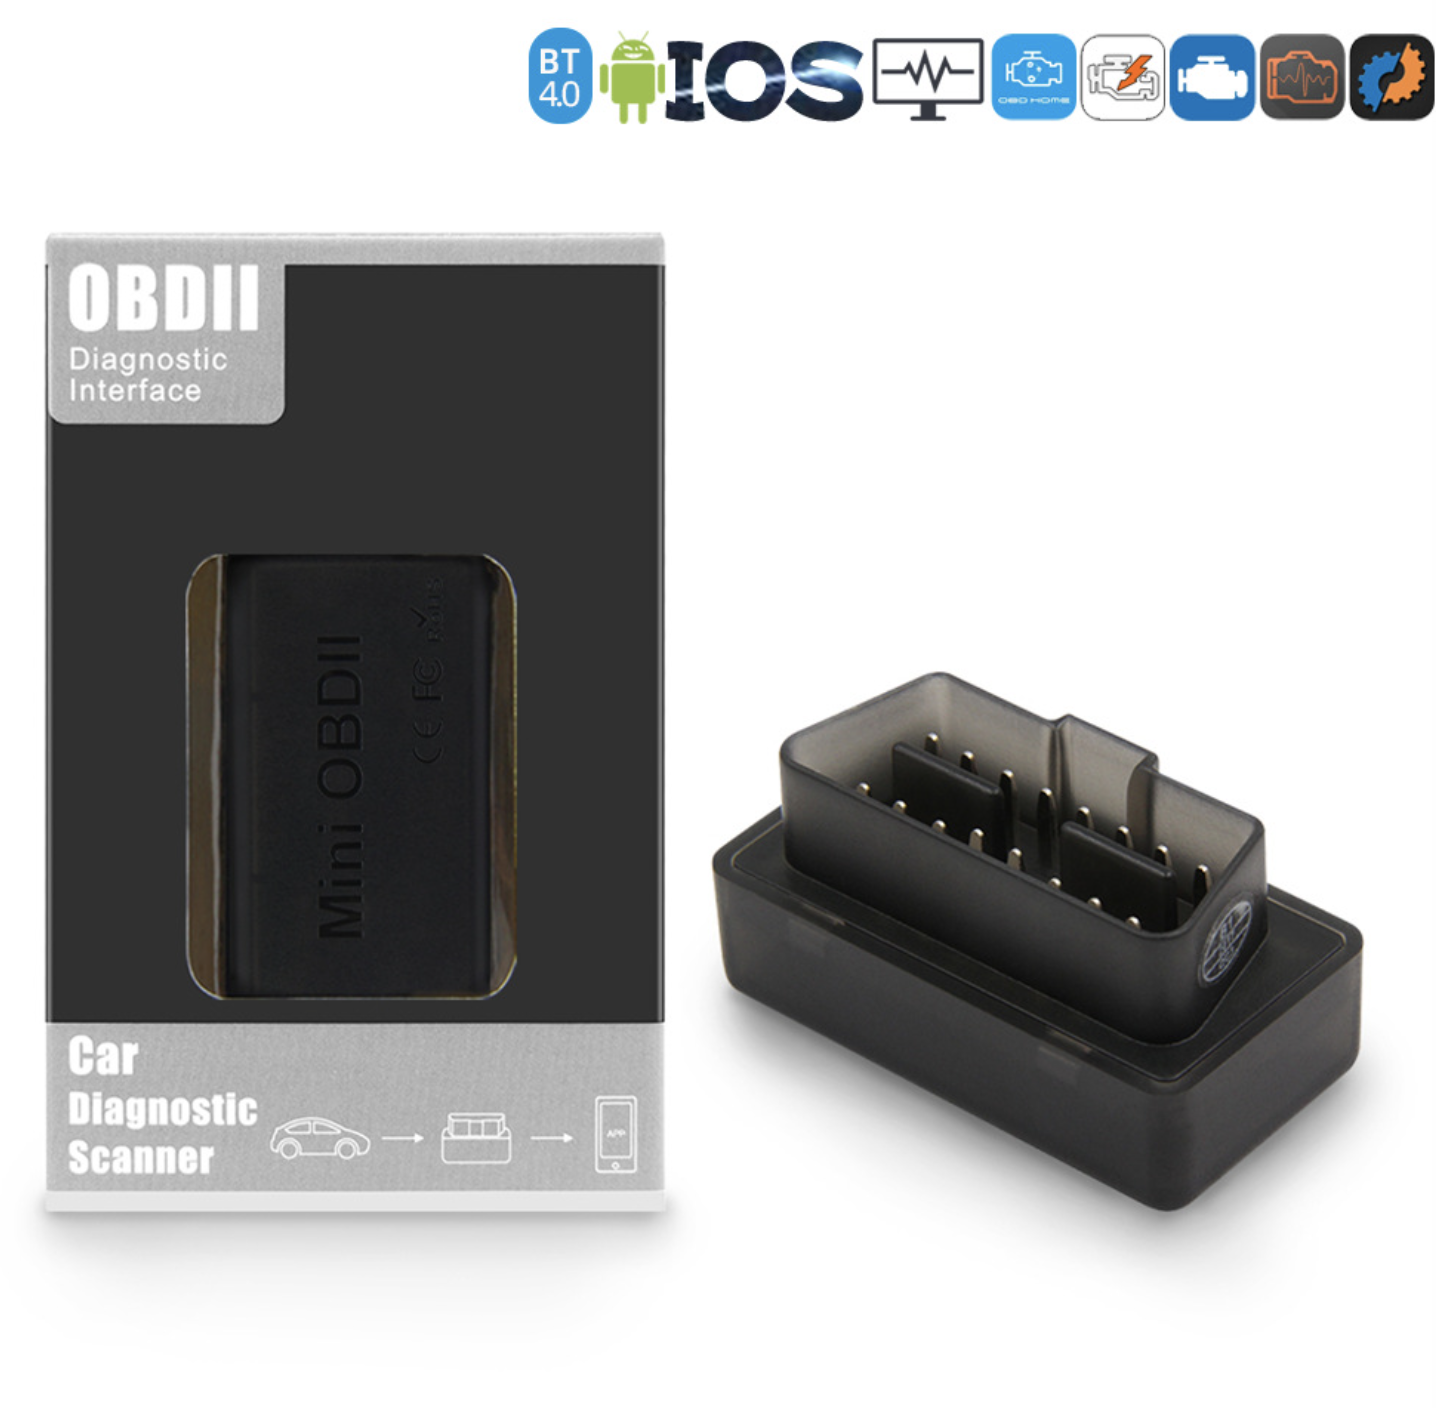 MINI Auto OBD Scanner ELM327 Bluetooth 4.0 OBD2 OBDII Strumento di rilevamento diagnostico per auto Strumento di rilevamento guasti per IOS Android